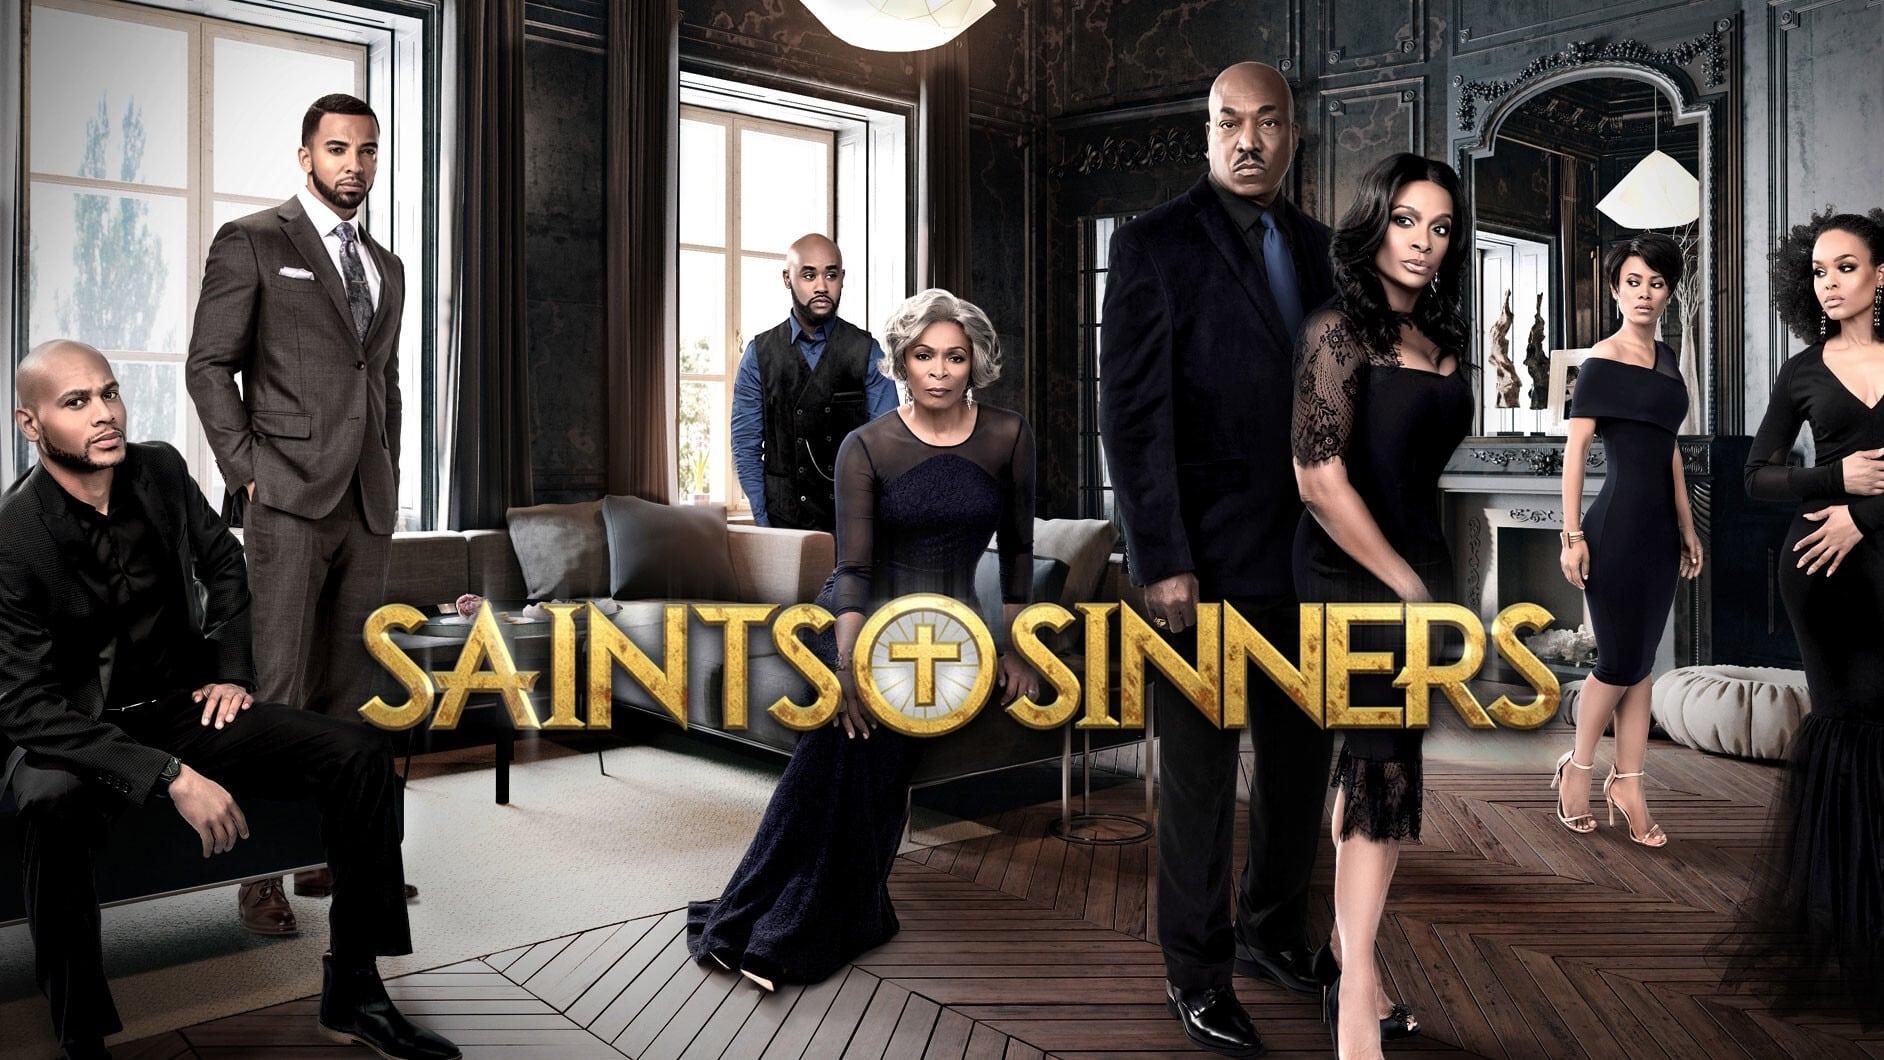 Saints & Sinners backdrop